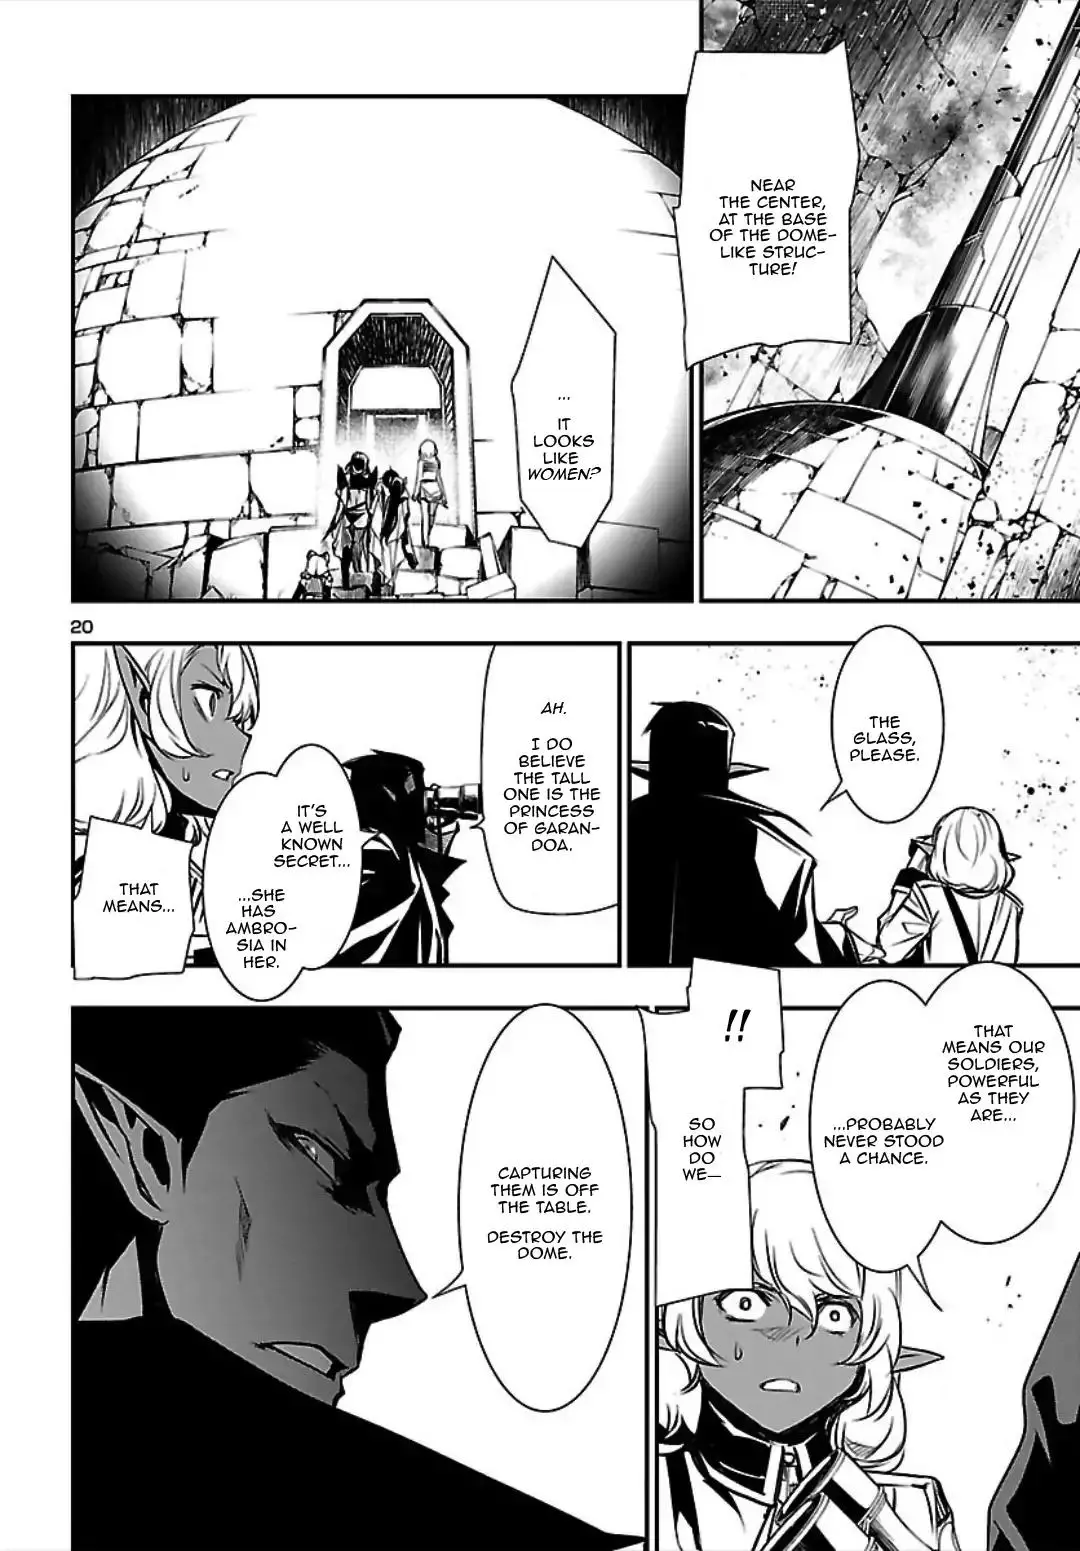 Shinju no Nectar - 20 page 19